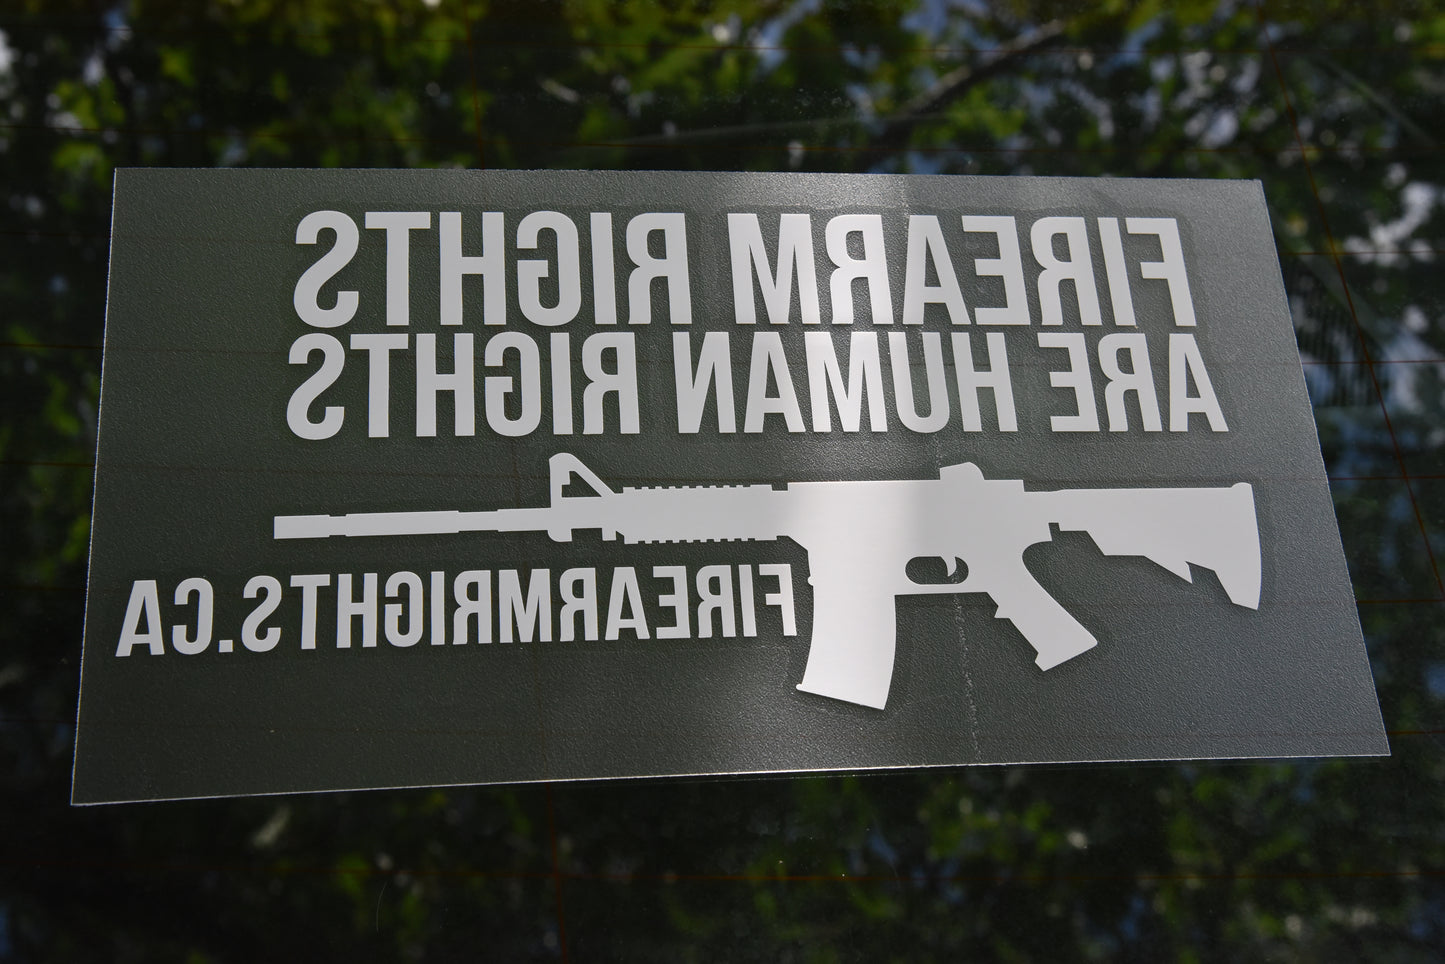 Firearm Rights Transfer Sticker